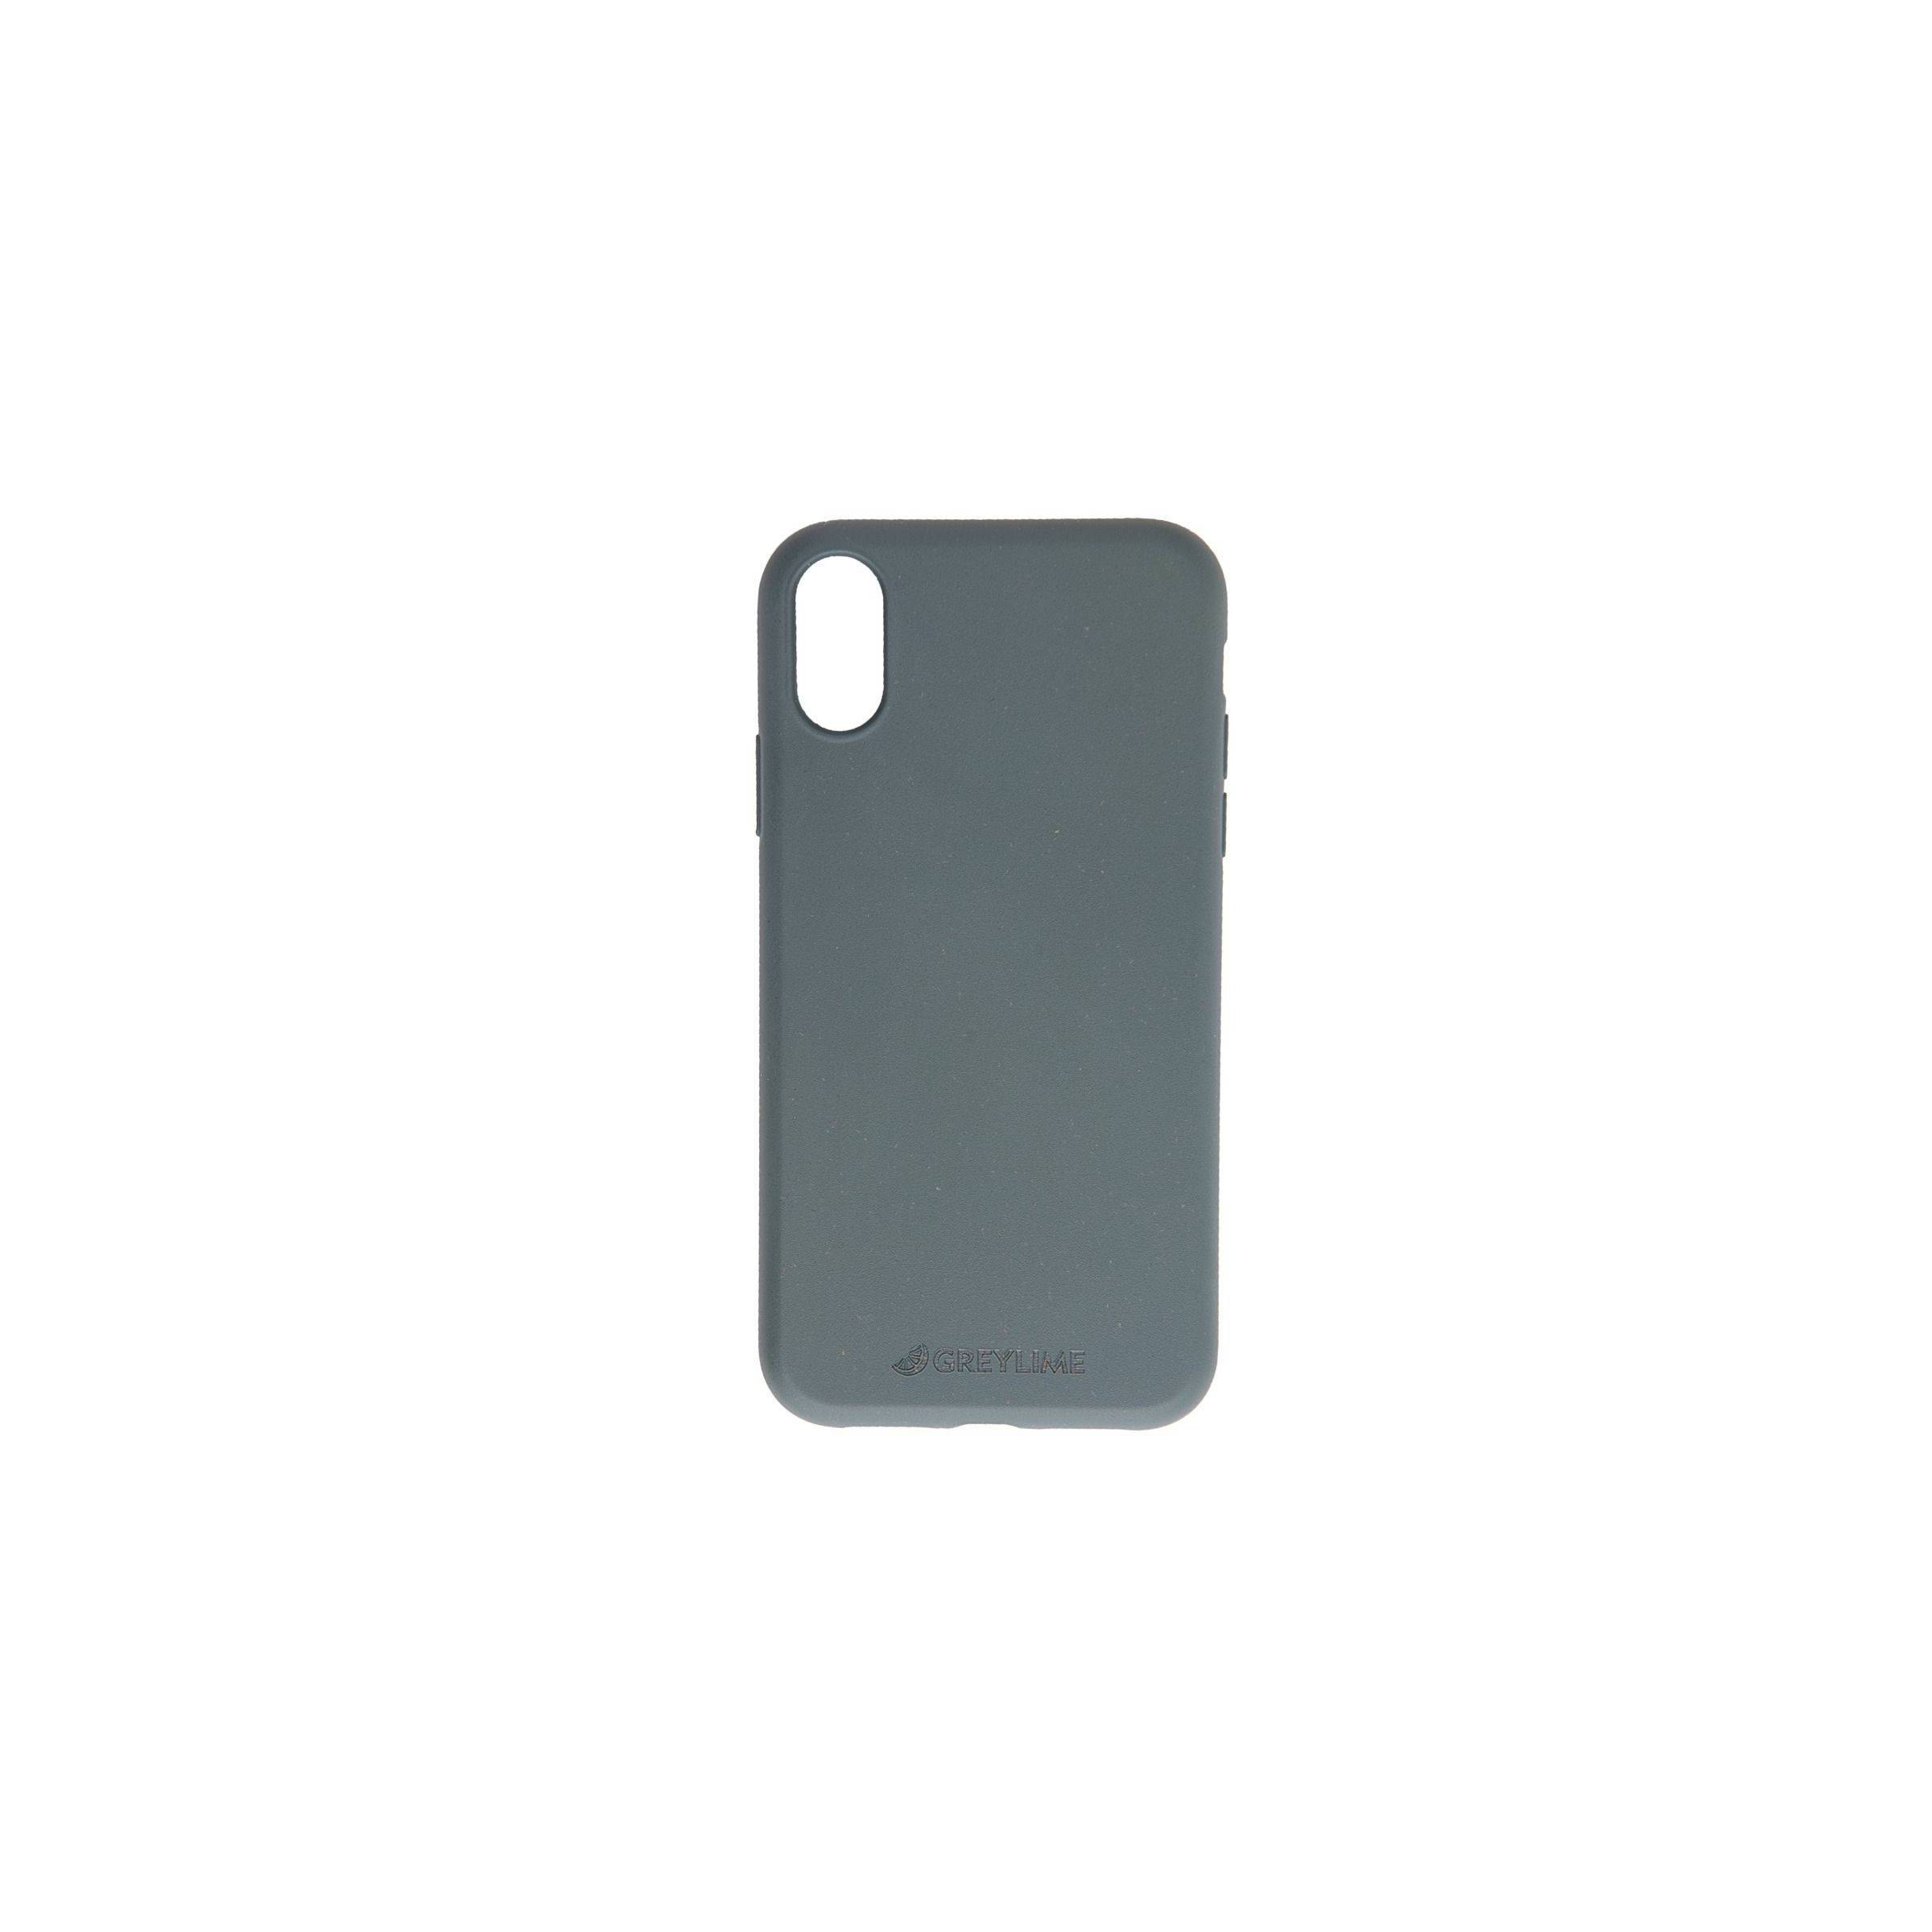 Bilde av Iphone X/xs Biodegradable Cover Greylime